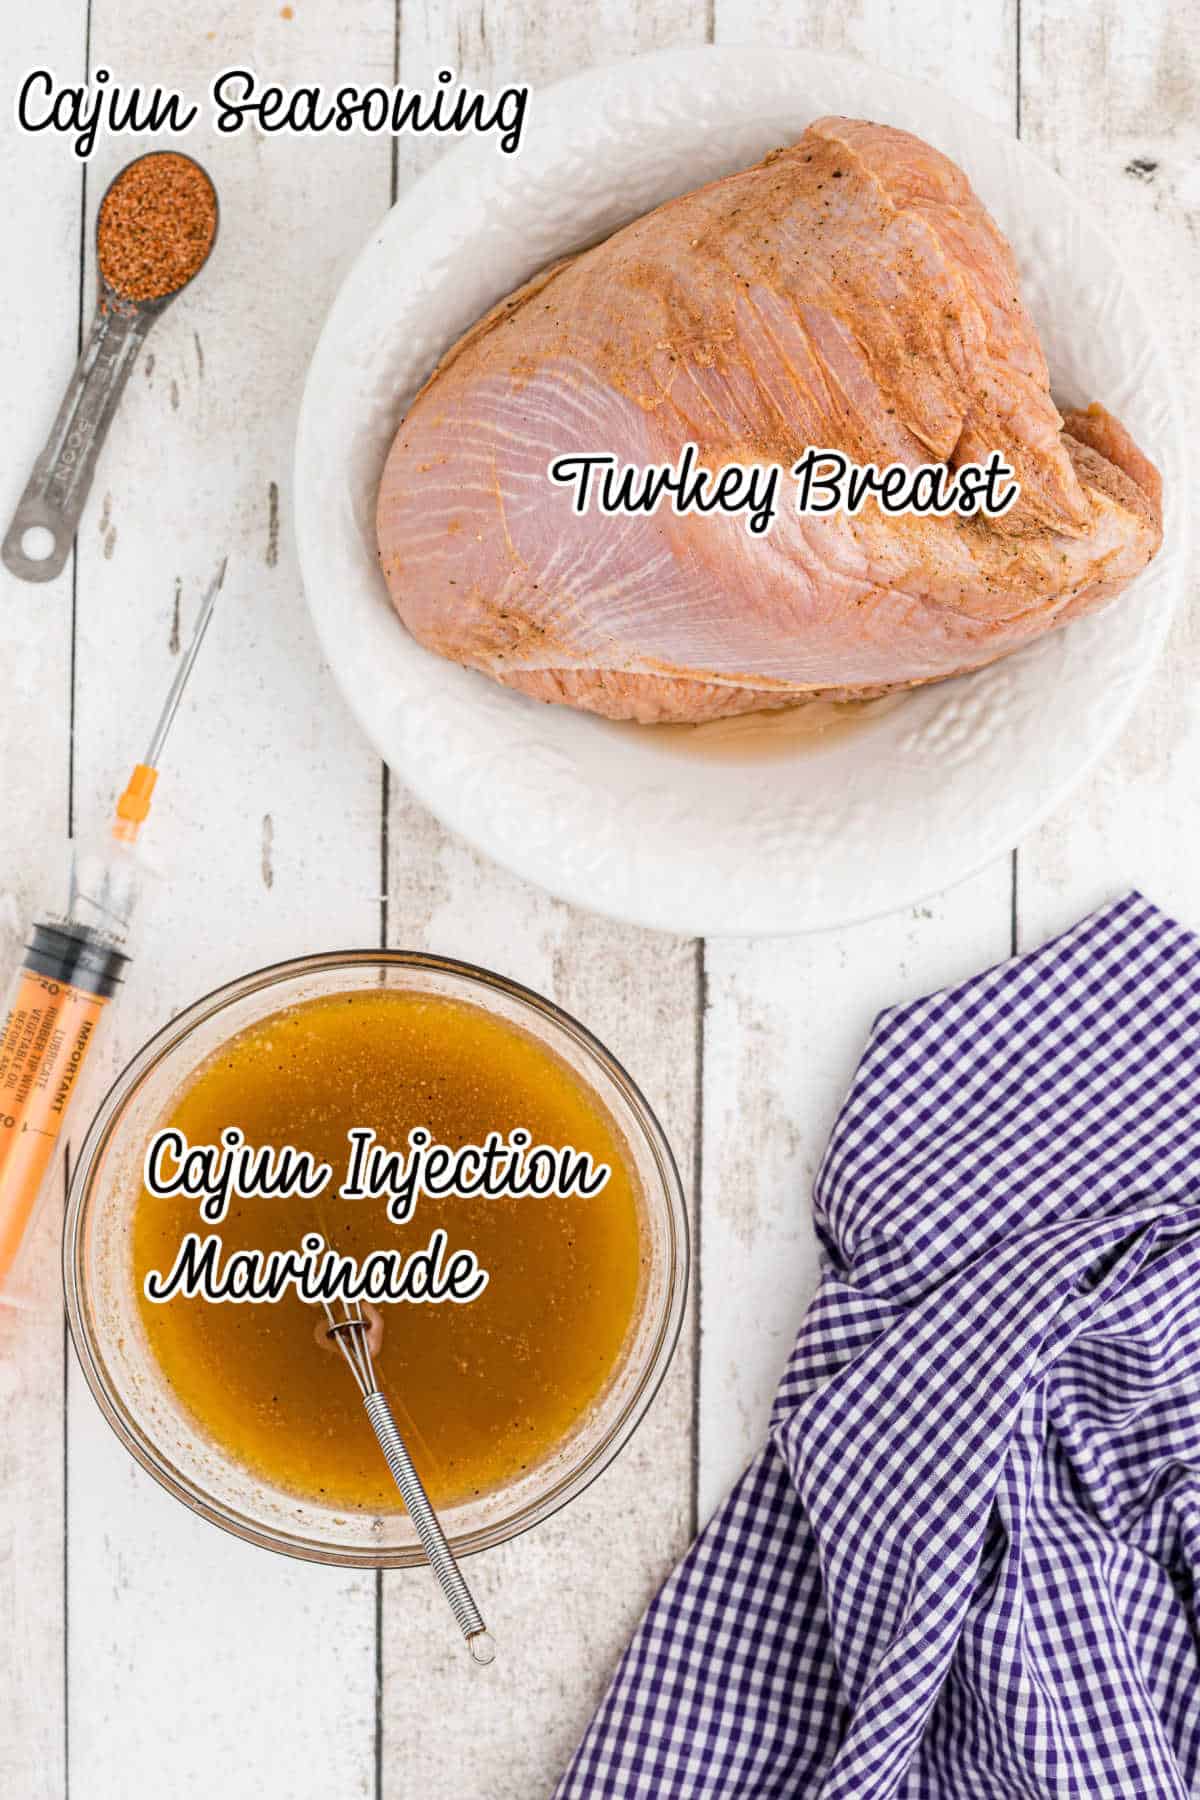 ingredients needed to make Cajun turkey breast.